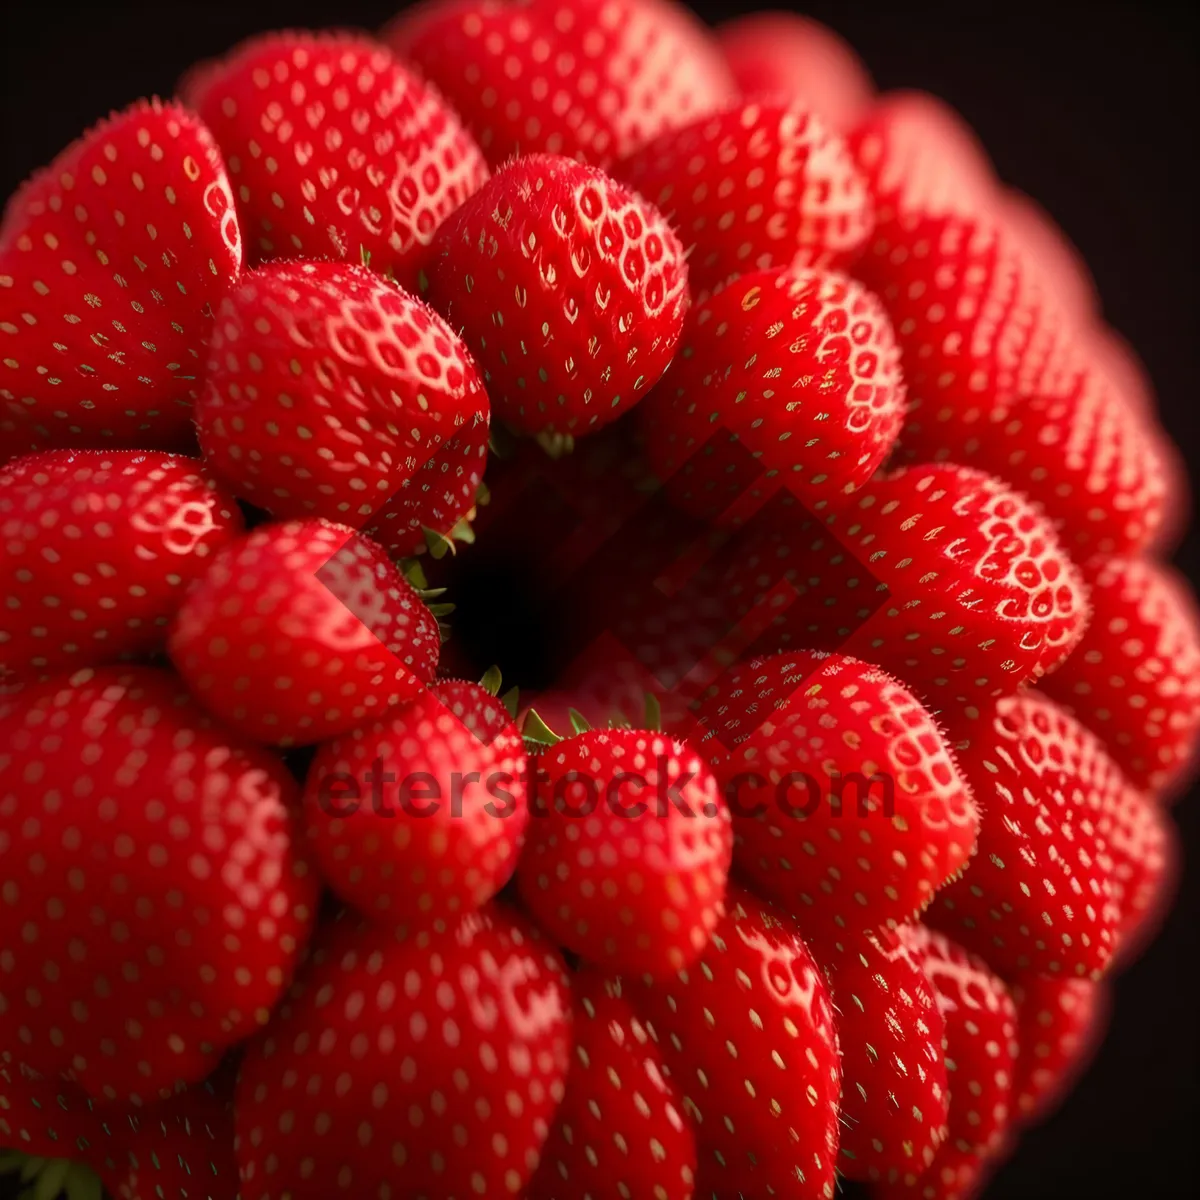 Picture of Juicy Summer Berries: Raspberries and Strawberries